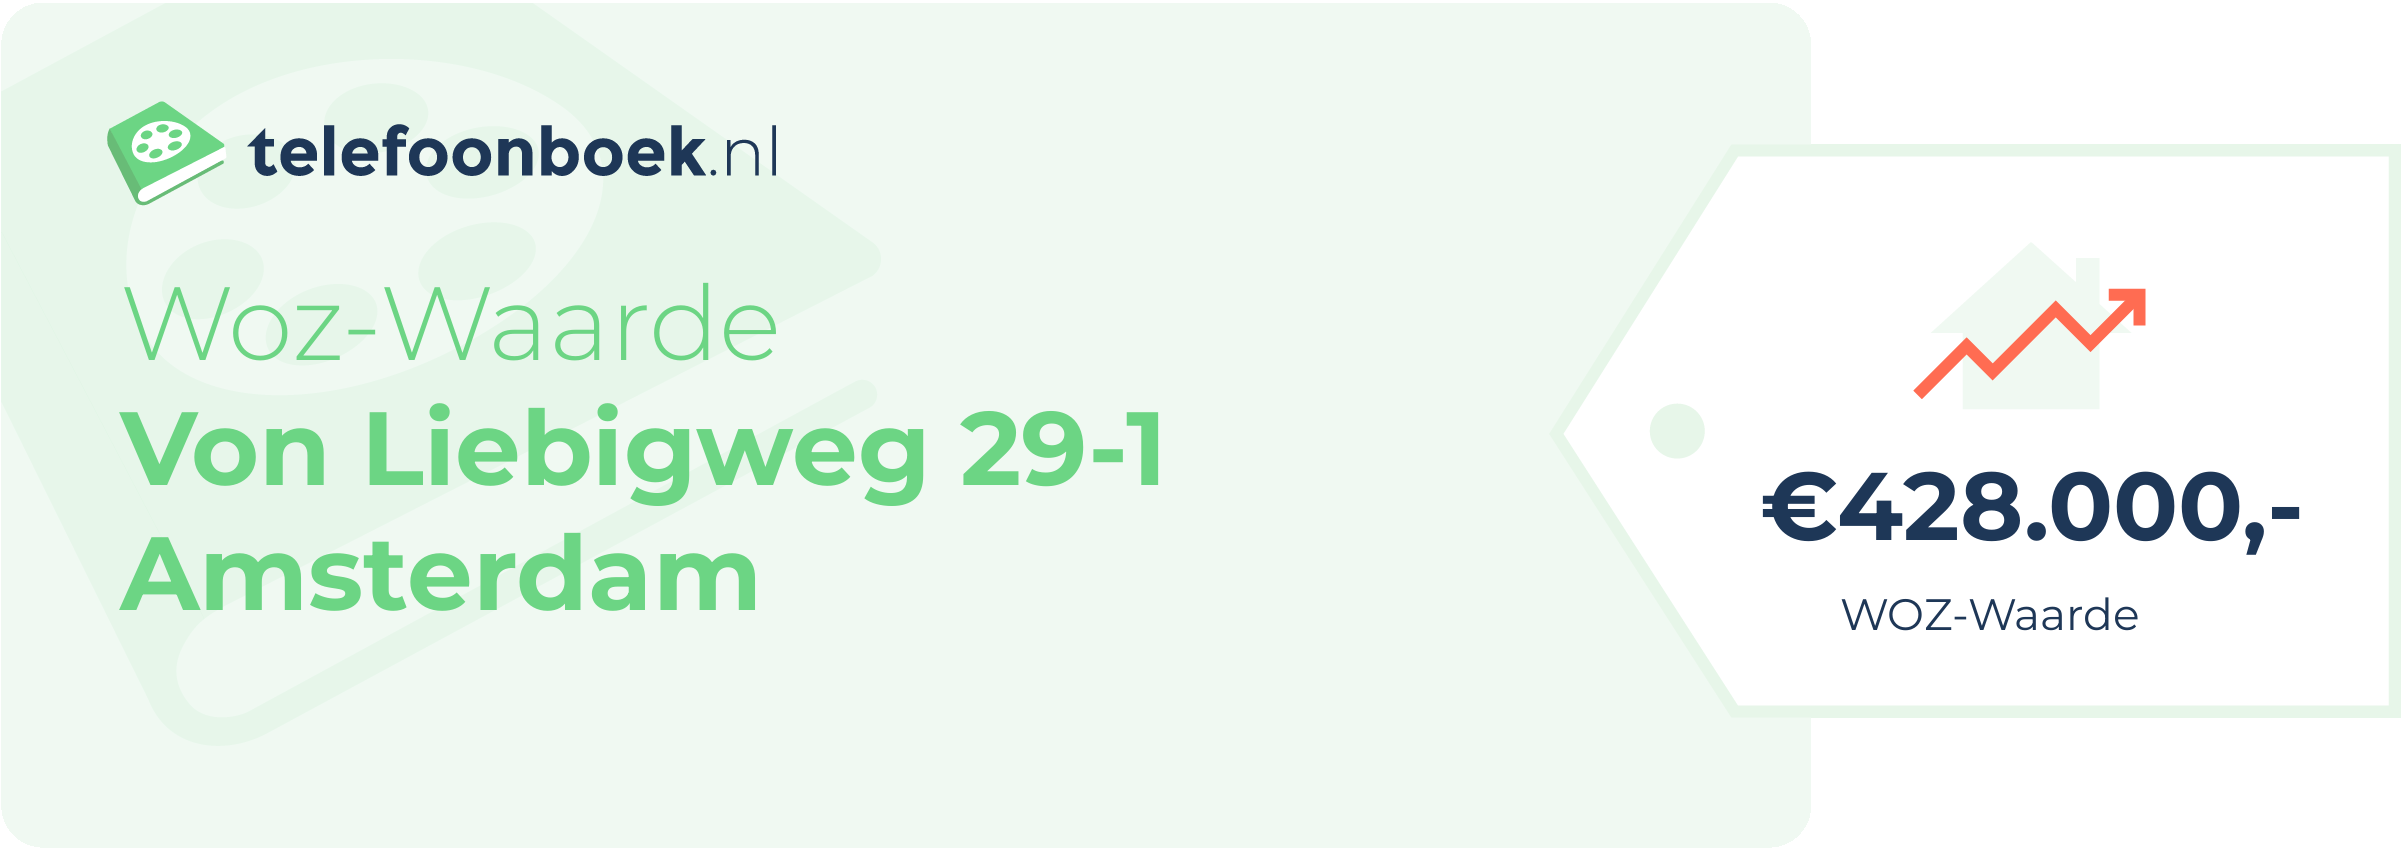 WOZ-waarde Von Liebigweg 29-1 Amsterdam